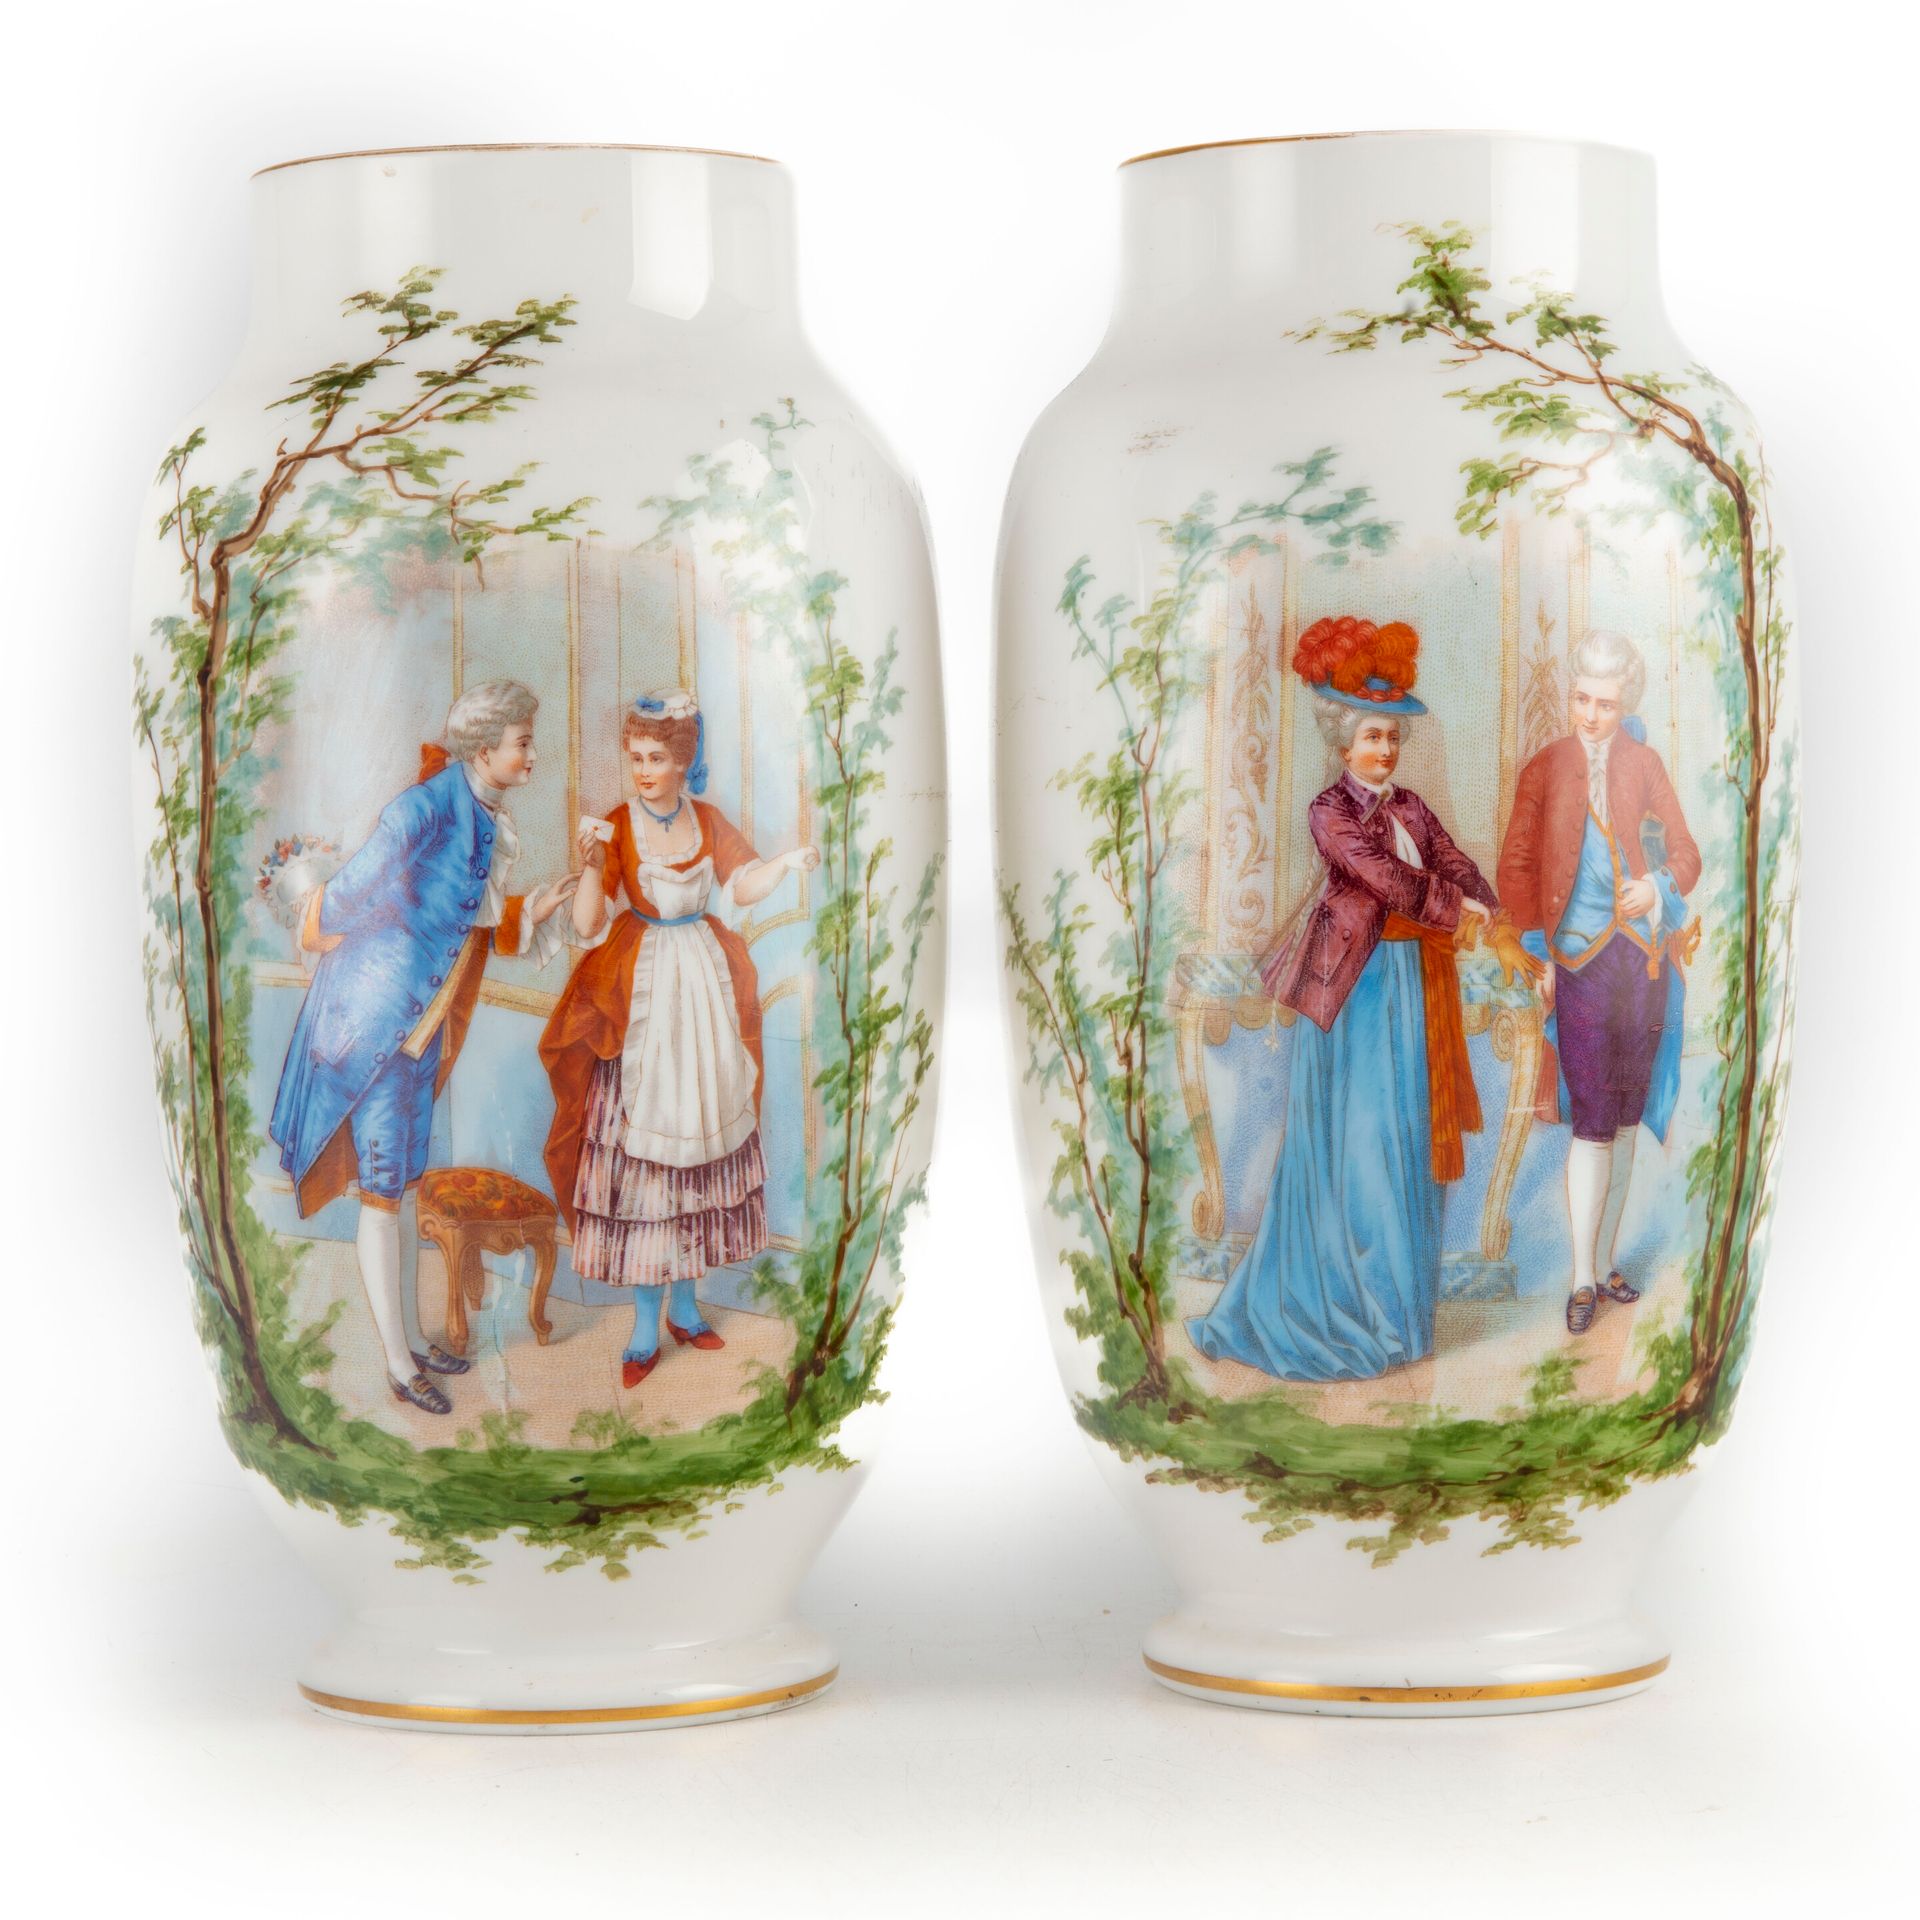 Null Coppia di vasi opalini con scene galanti

Altezza: 31 cm